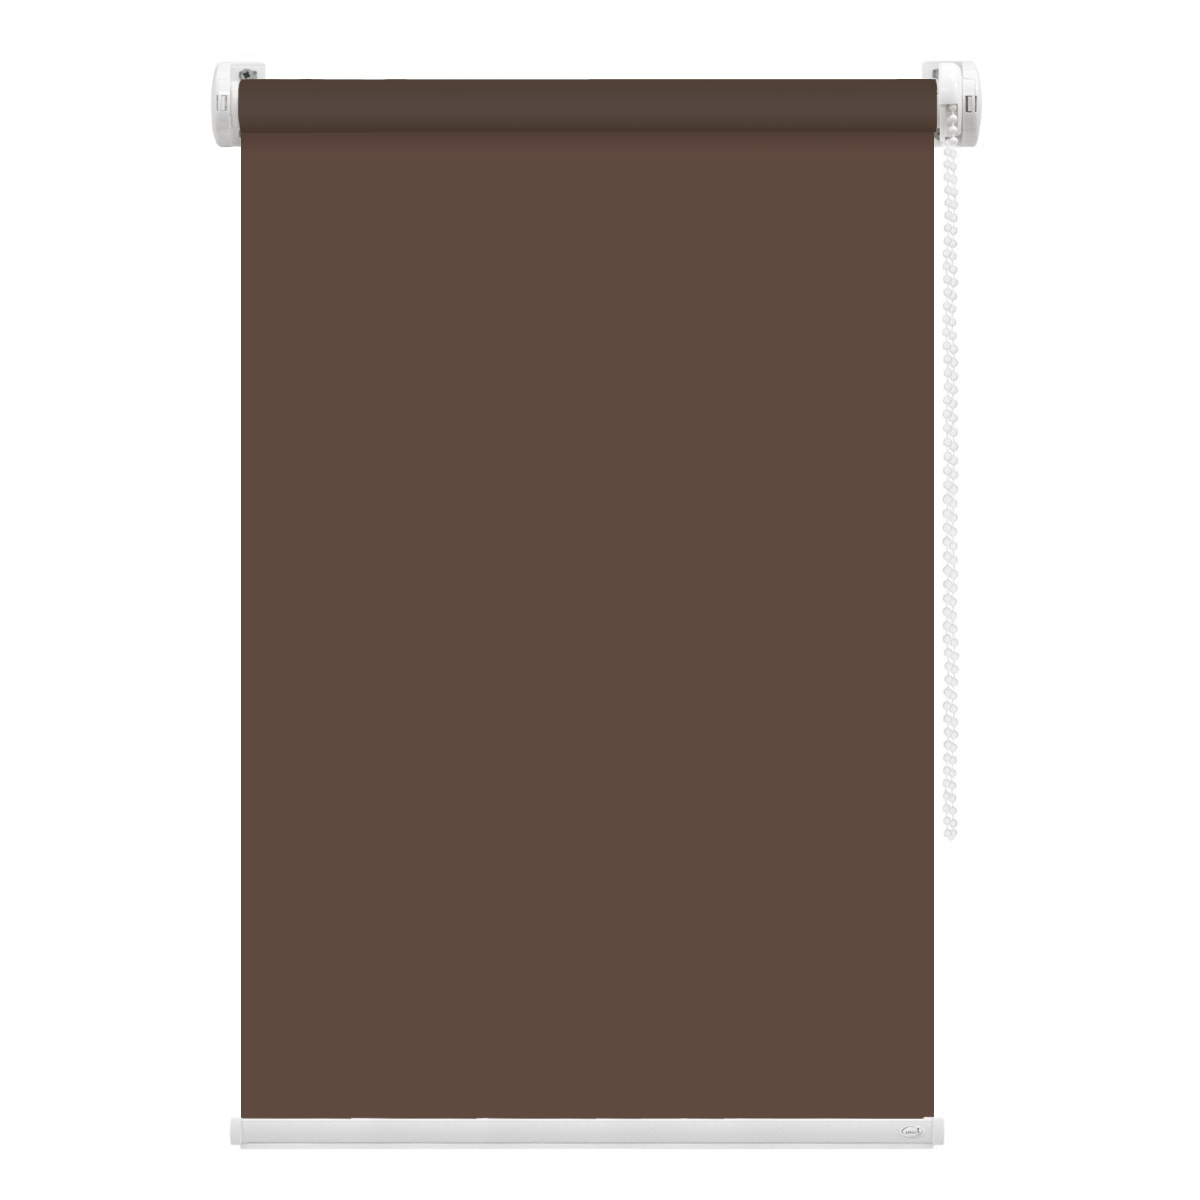 Рулонная штора FixLine Amigo Basic коричневая 60х160 см рулонная штора fixline amigo basic коричневая 65х160 см